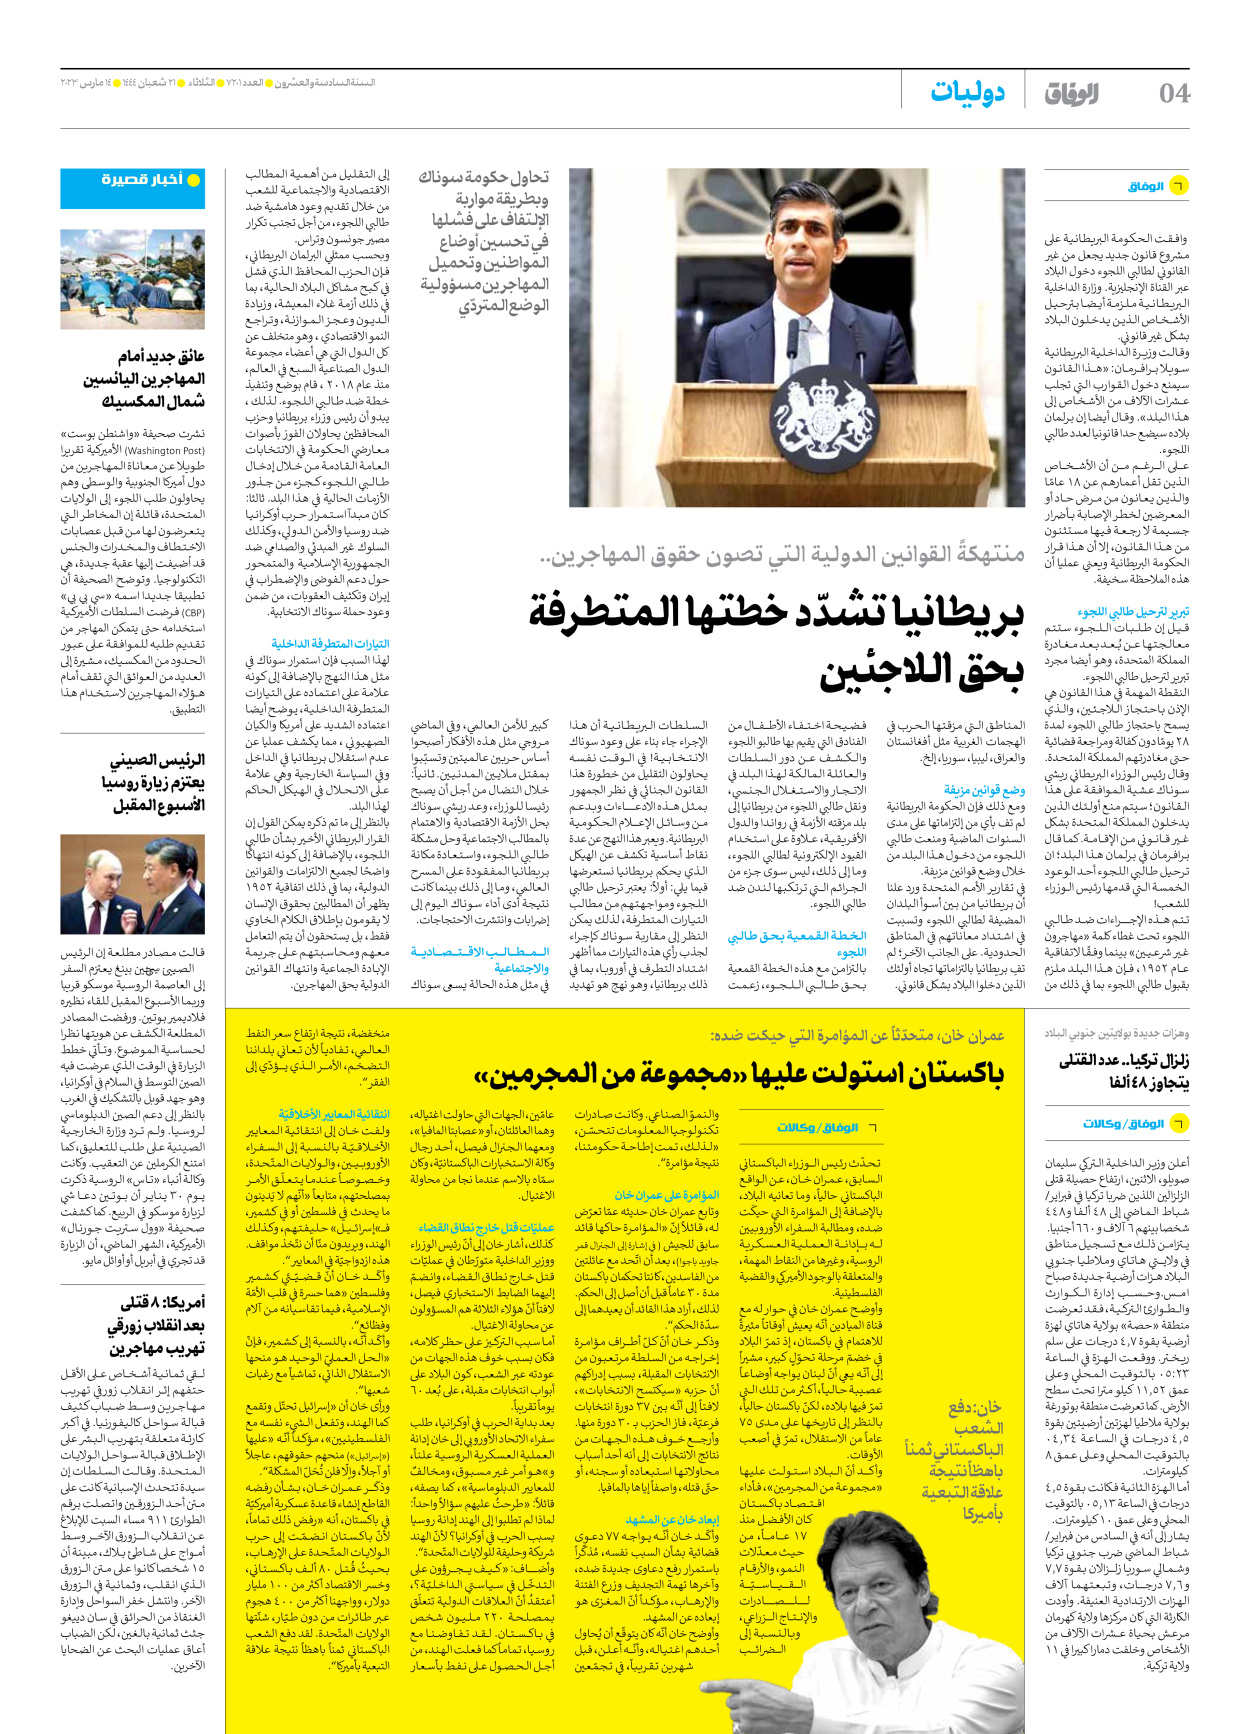 صحیفة ایران الدولیة الوفاق - العدد سبعة آلاف ومائتان وواحد - ١٤ مارس ٢٠٢٣ - الصفحة ٤